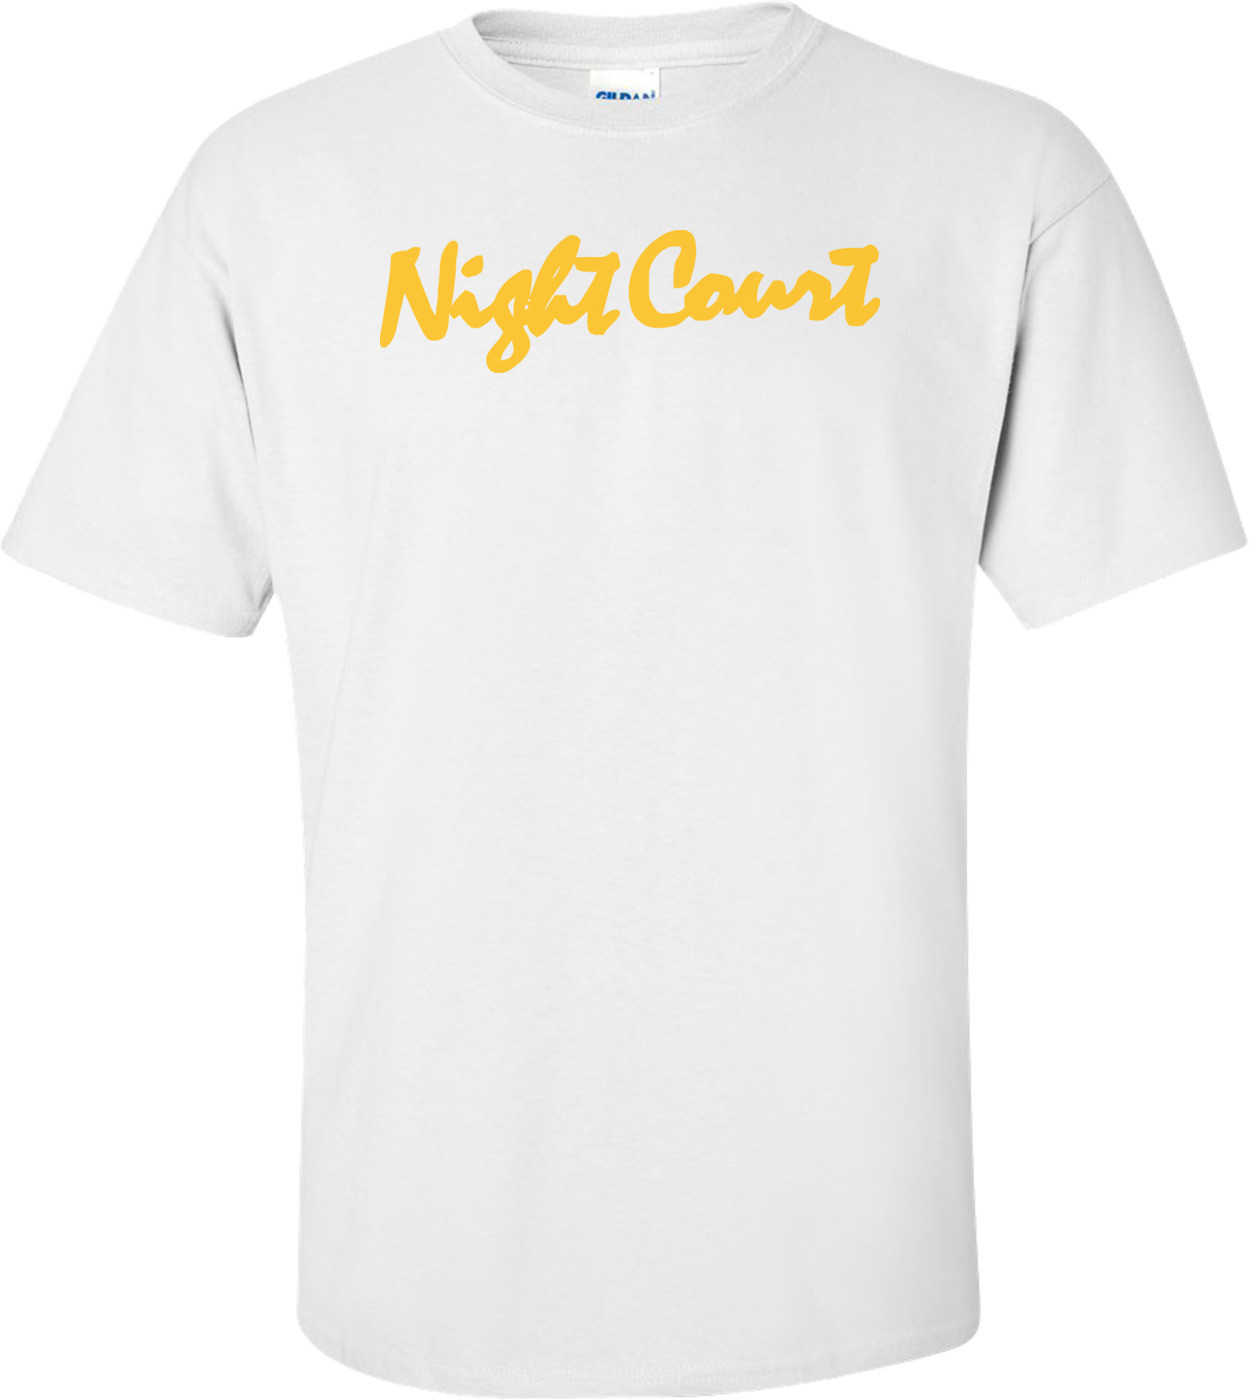 Night Court T-shirt